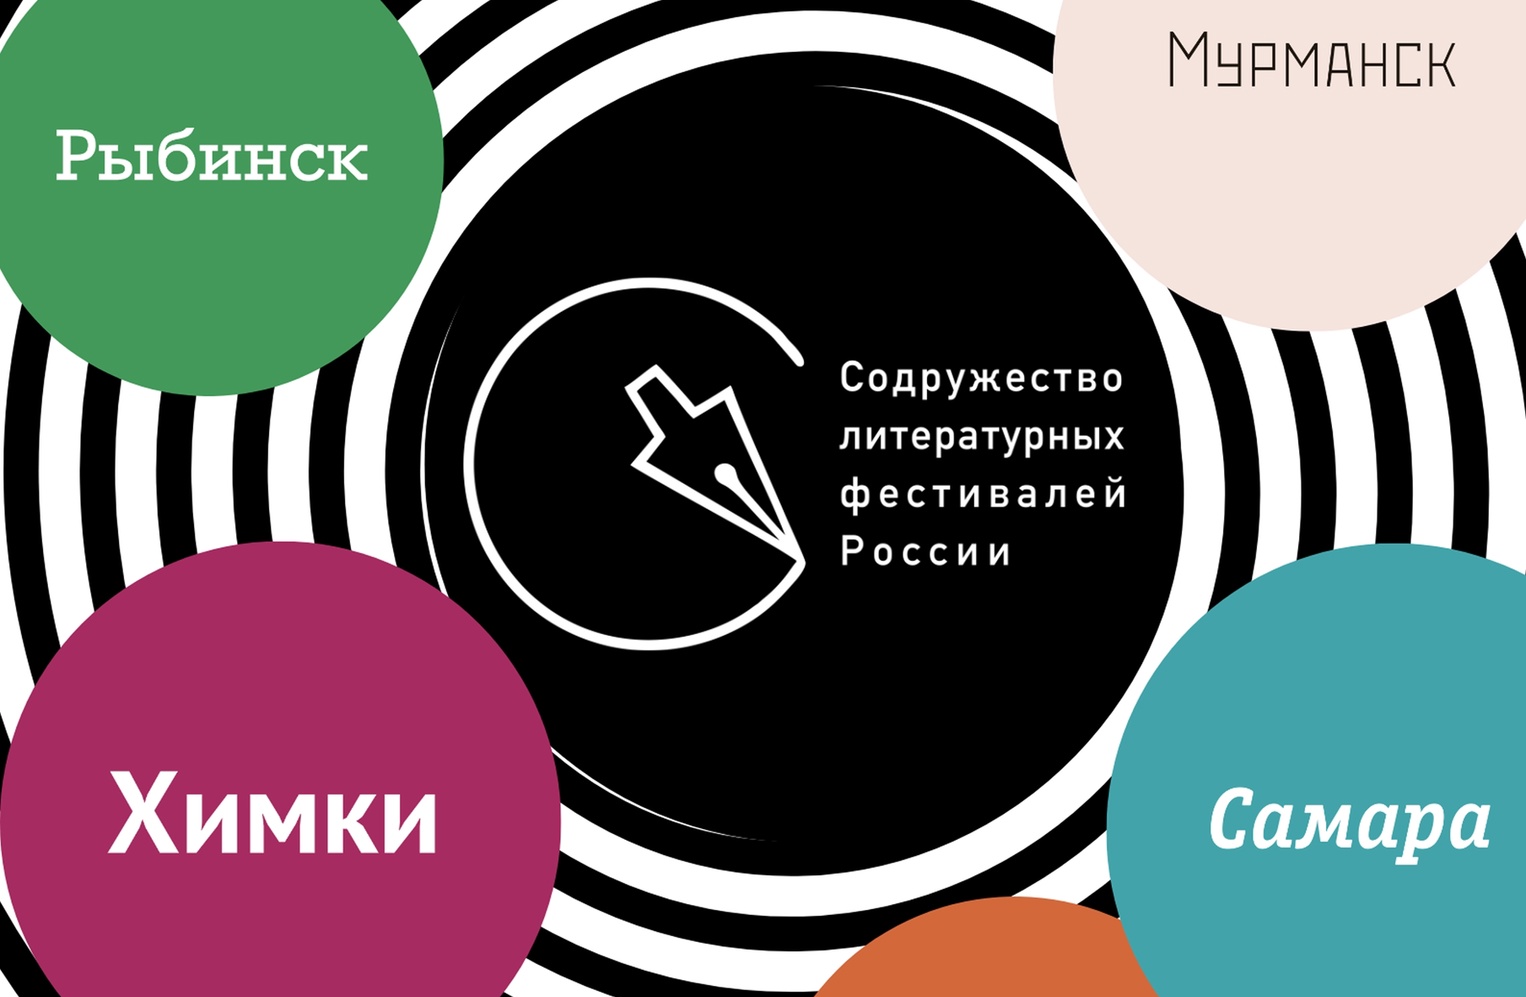 В России впервые создано Содружество литературных фестивалей